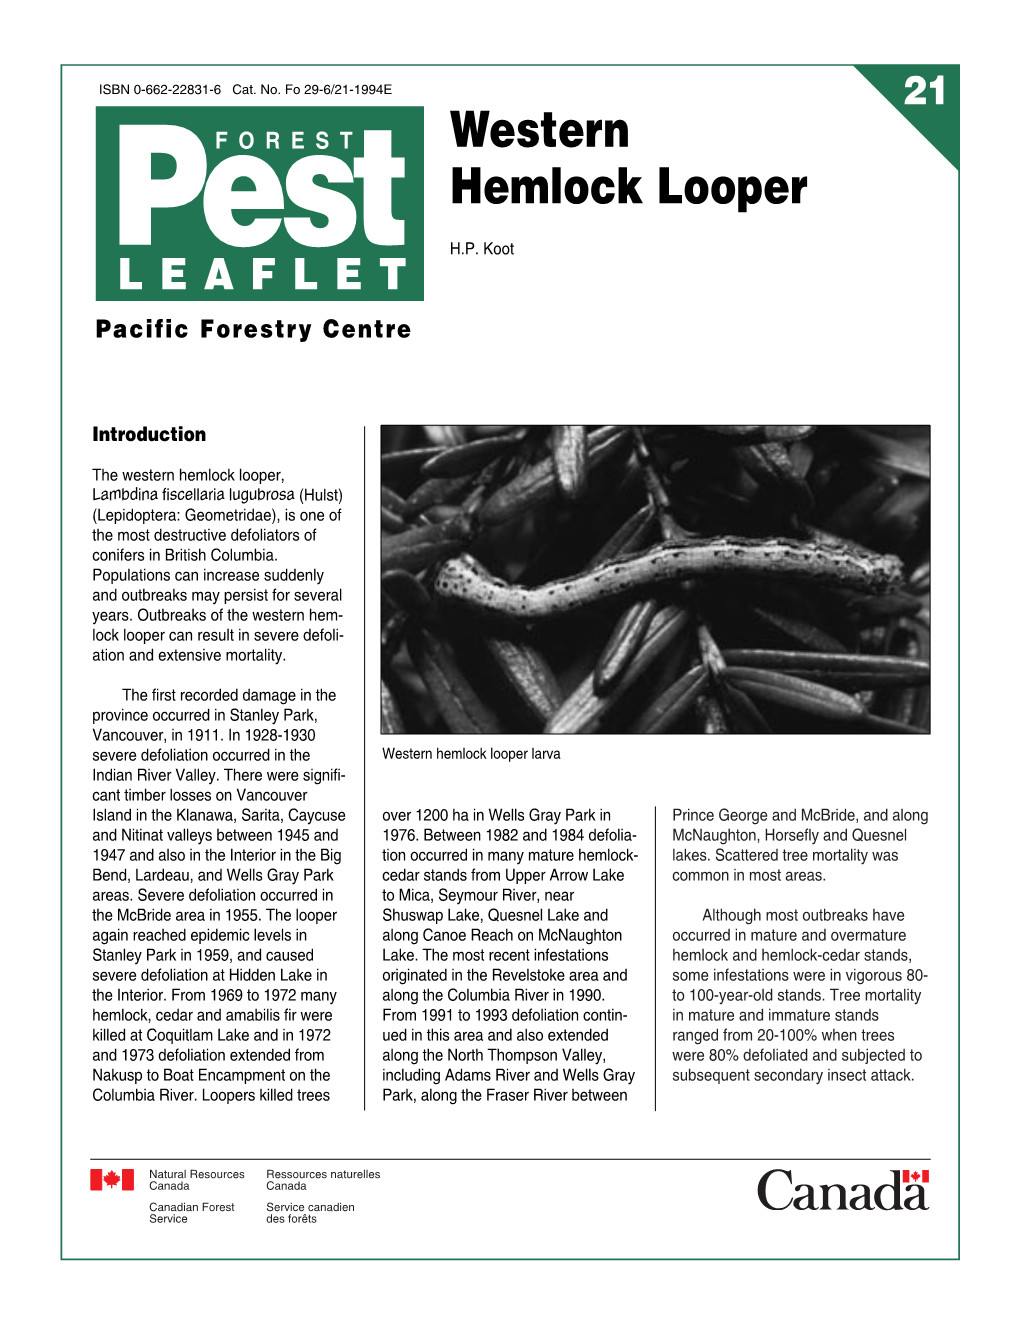 Western Hemlock Looper Pest H.P